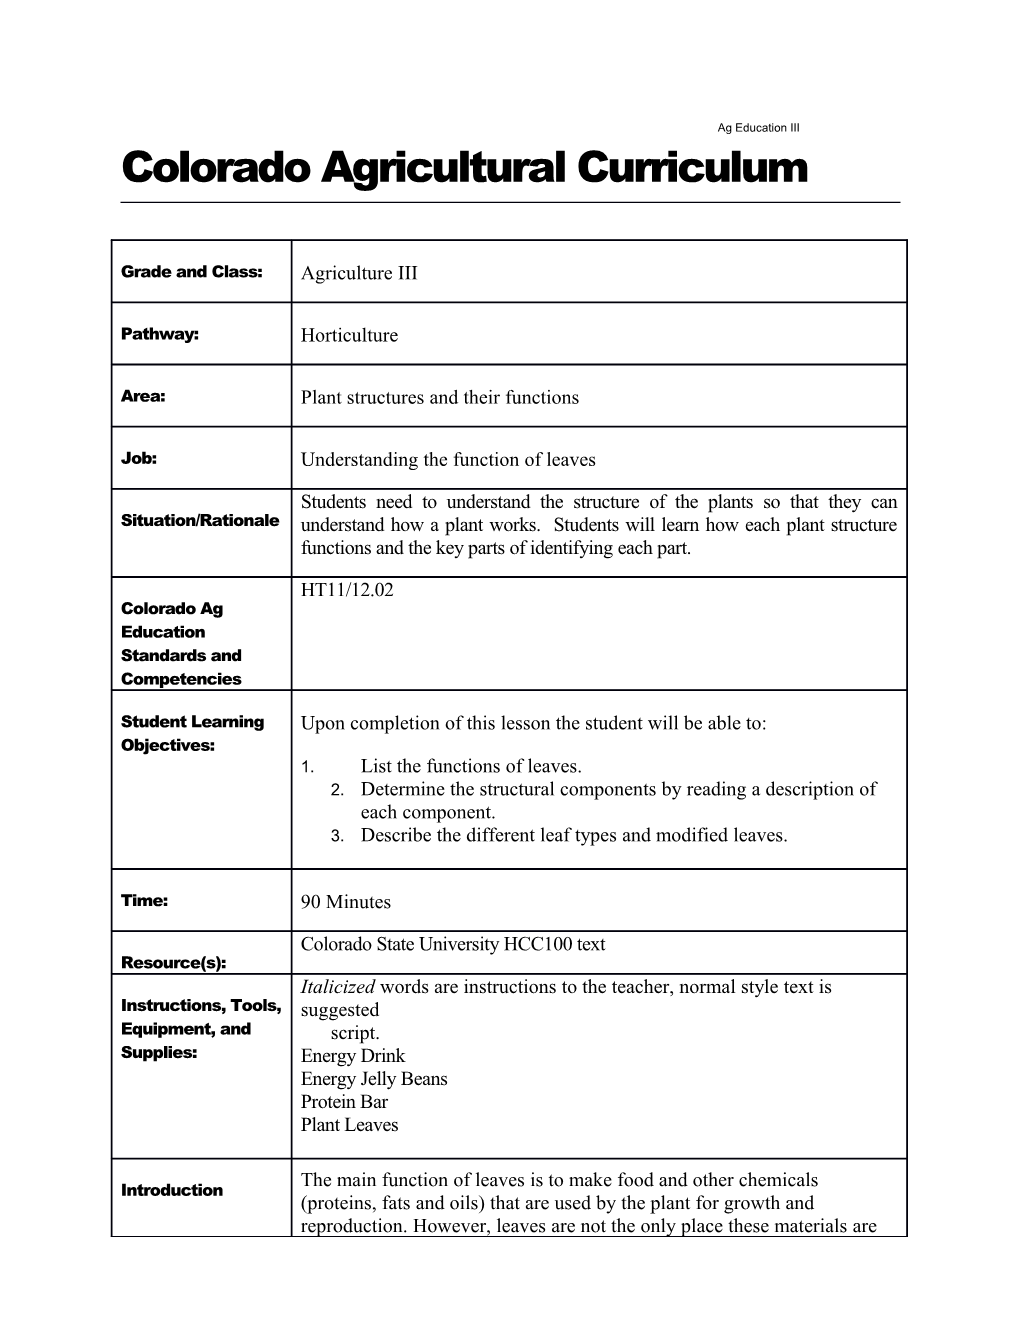 Coloradoagricultural Curriculum